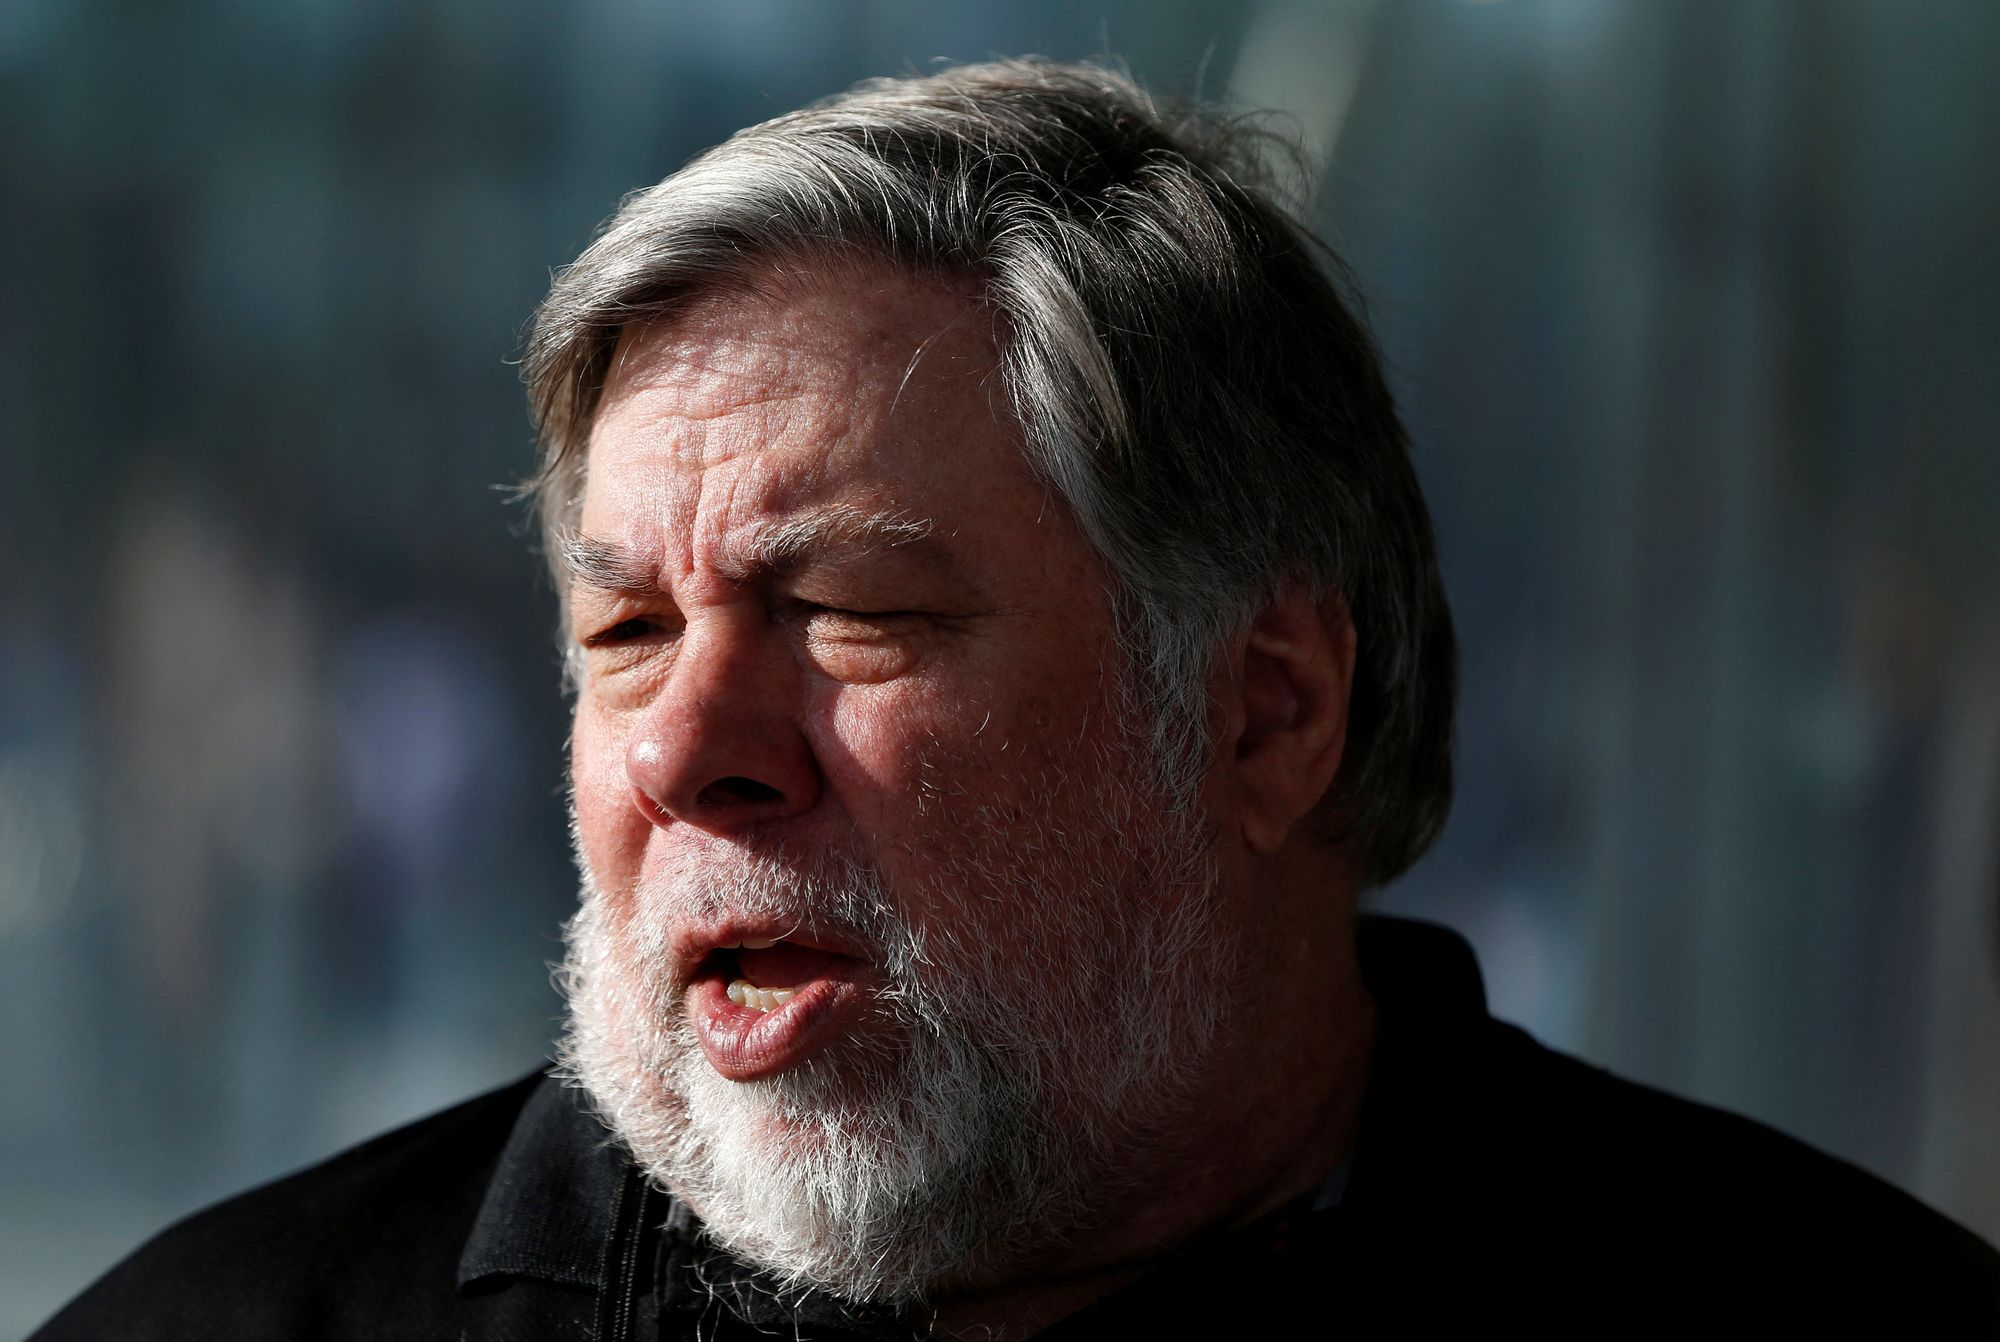 Steve Wozniak